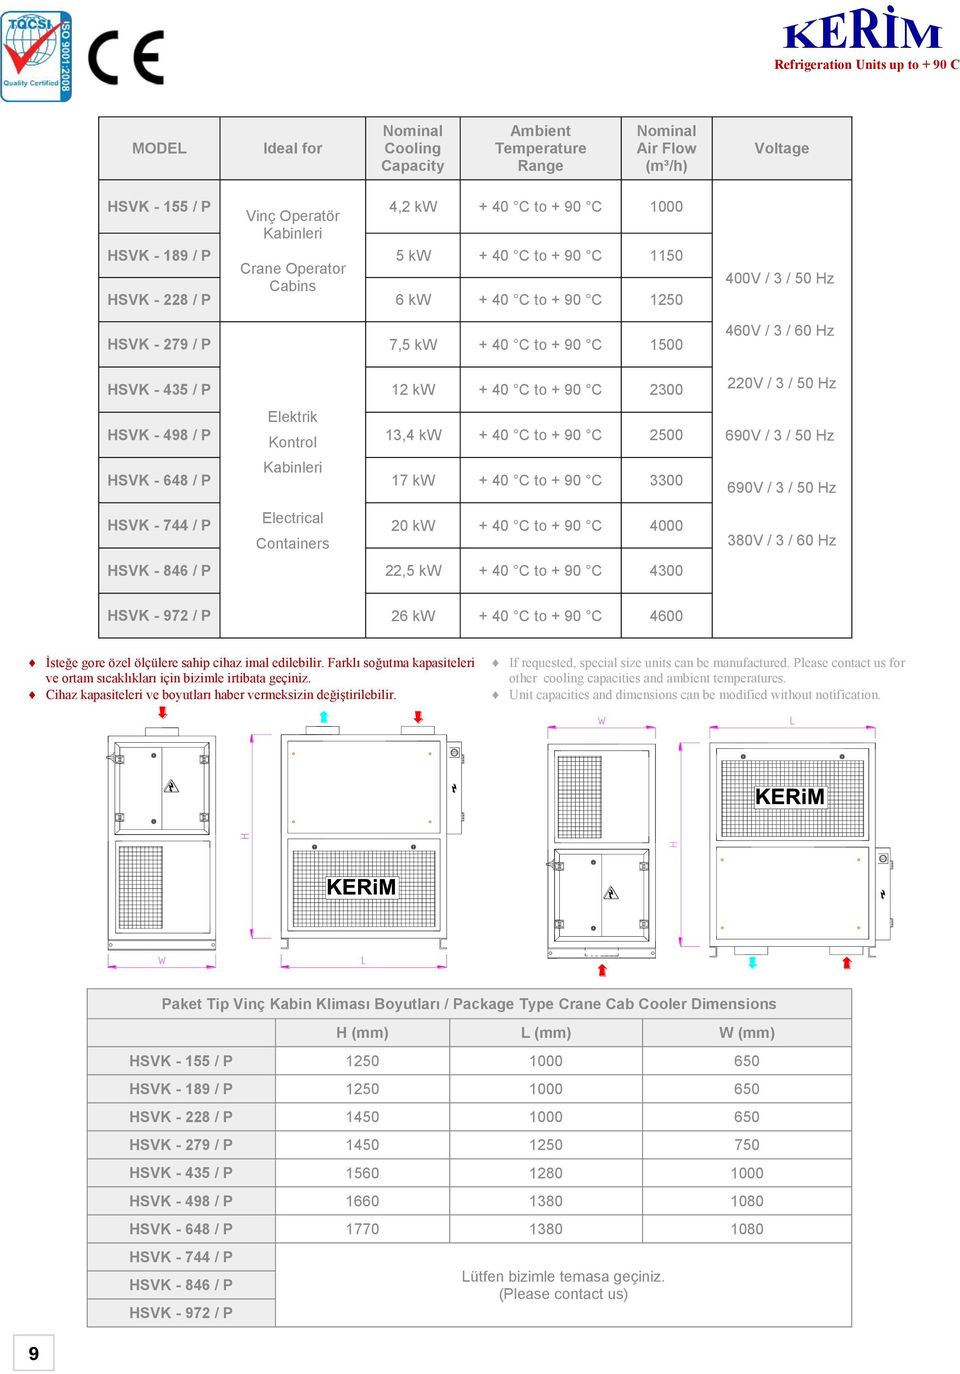 2300 Elektrik HSVK - 498 / P Kontrol 13,4 kw + 40 C to + 90 C 2500 Kabinleri HSVK - 648 / P 17 kw + 40 C to + 90 C 3300 HSVK - 744 / P Electrical 20 kw + 40 C to + 90 C 4000 Containers HSVK - 846 / P